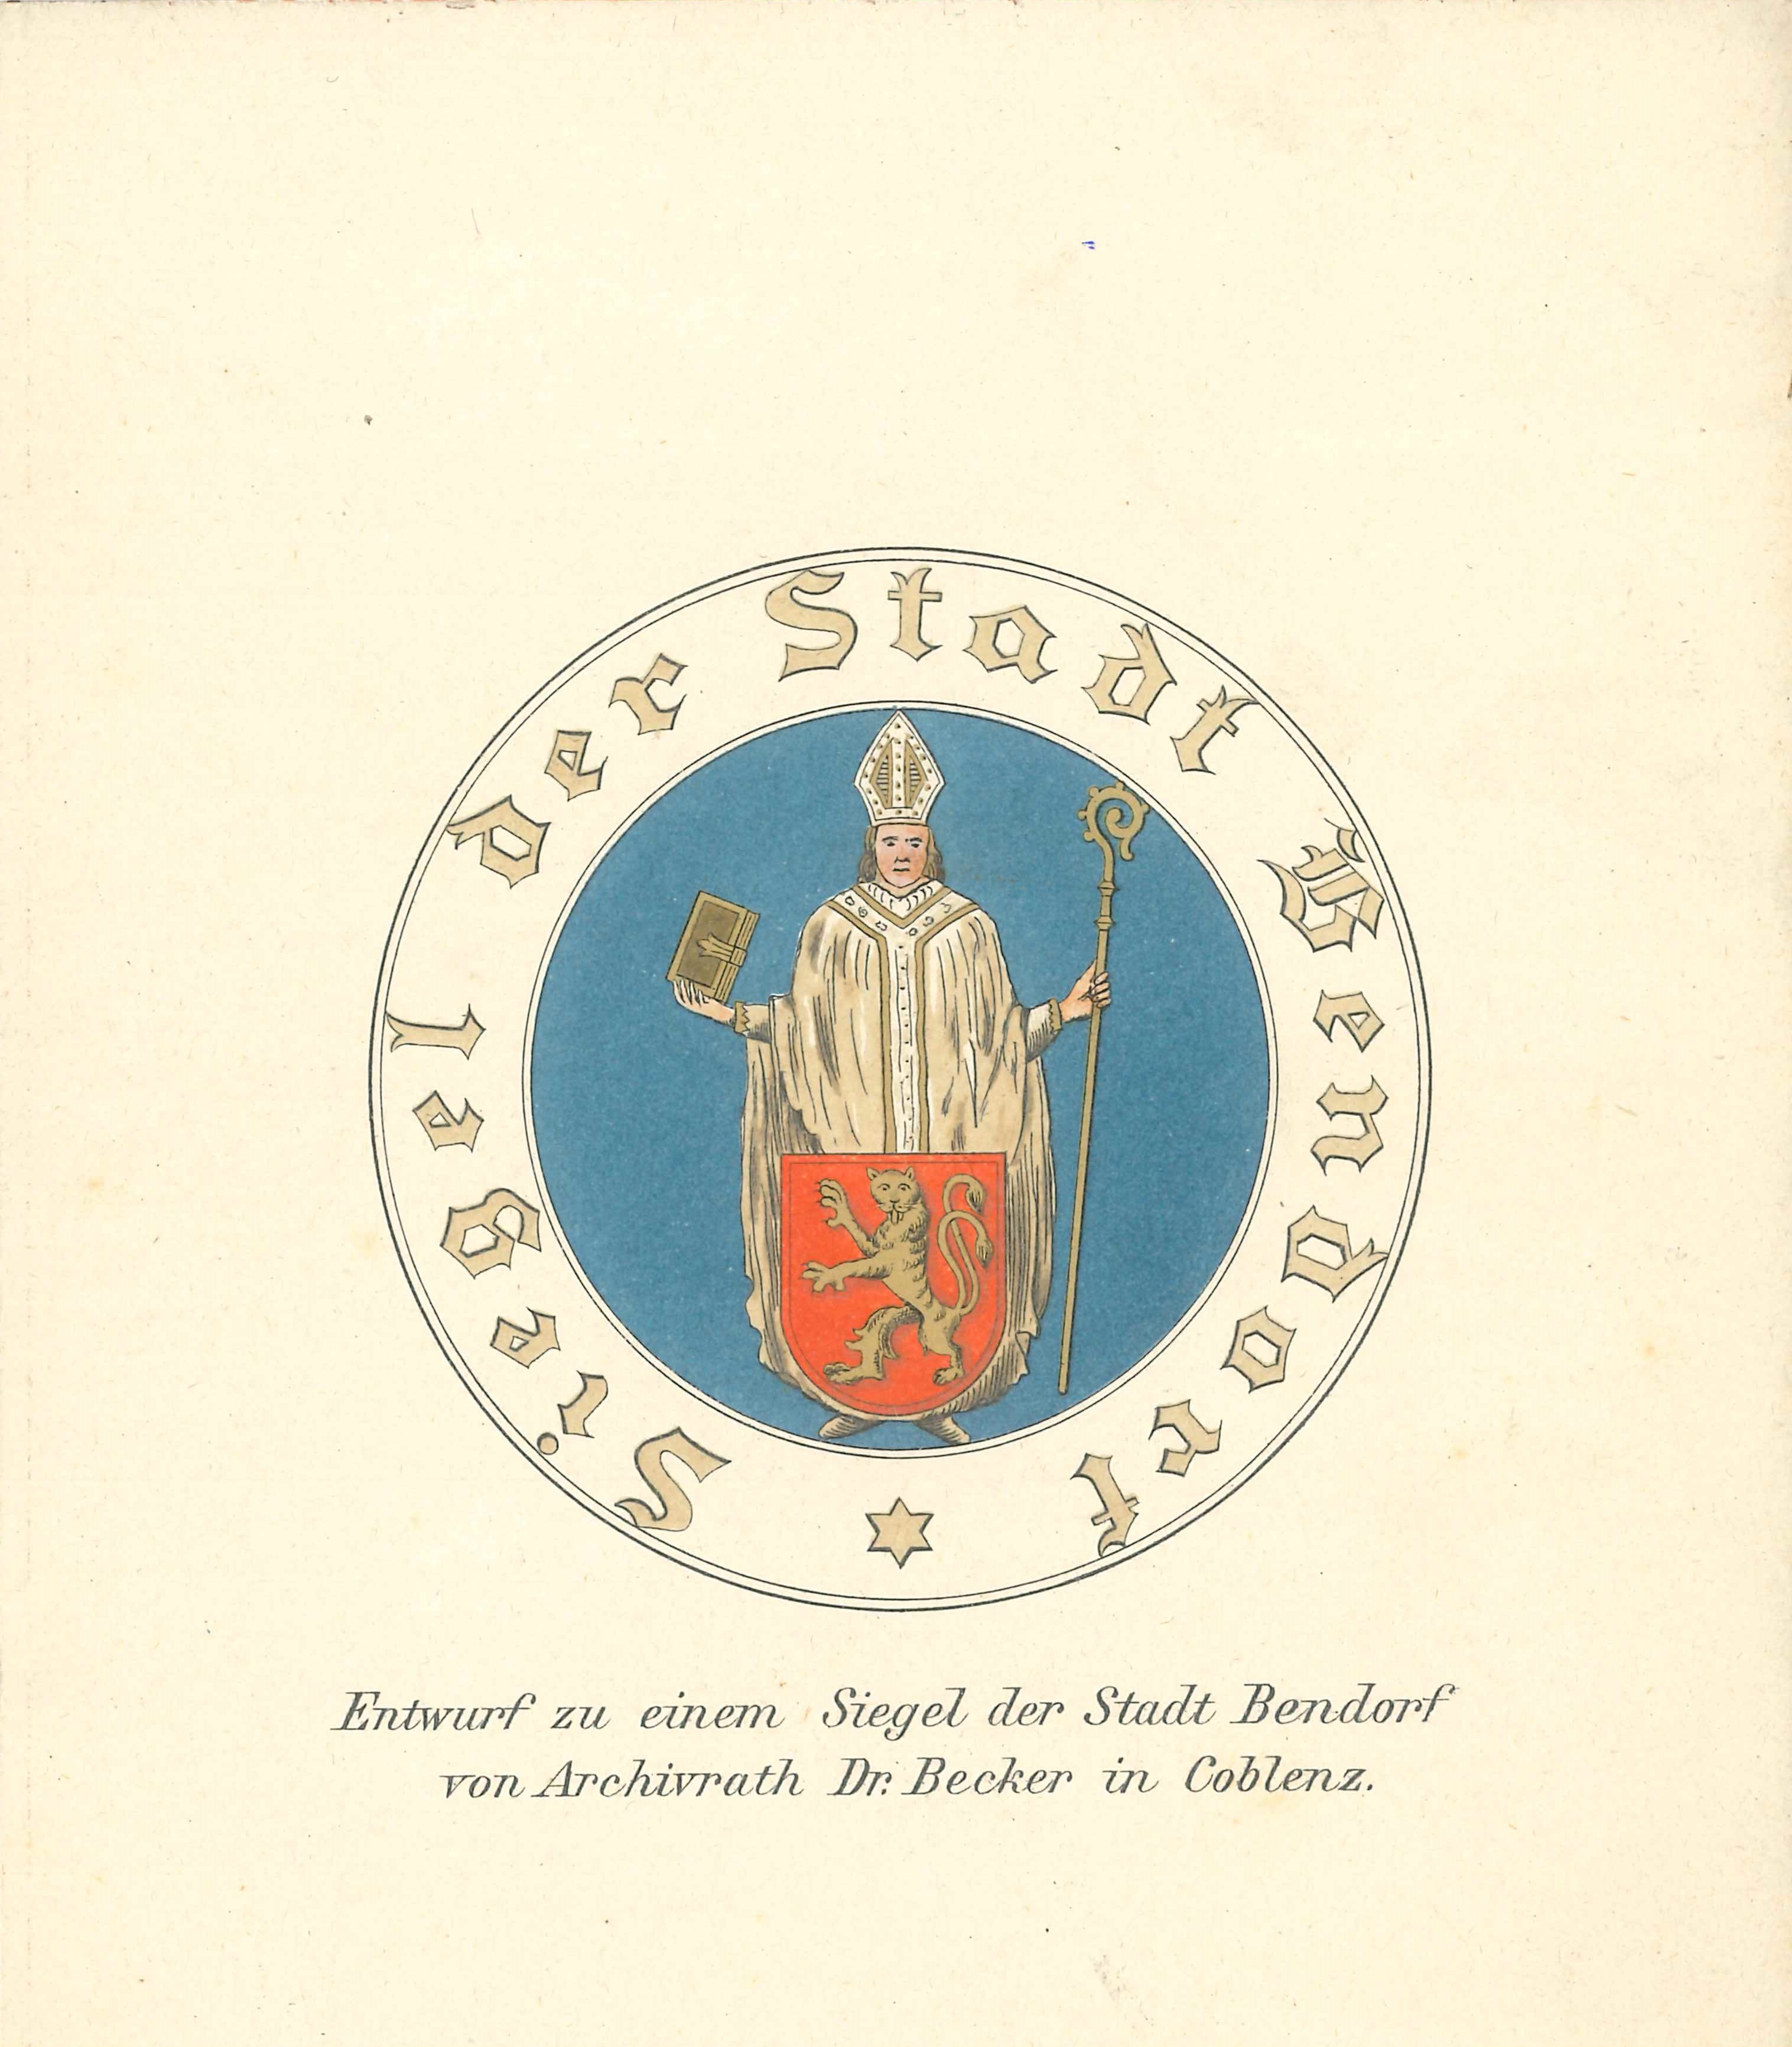 Wappen der Stadt Bendorf, Entwurf zu einem Siegel, 1890 (REM CC BY-NC-SA)